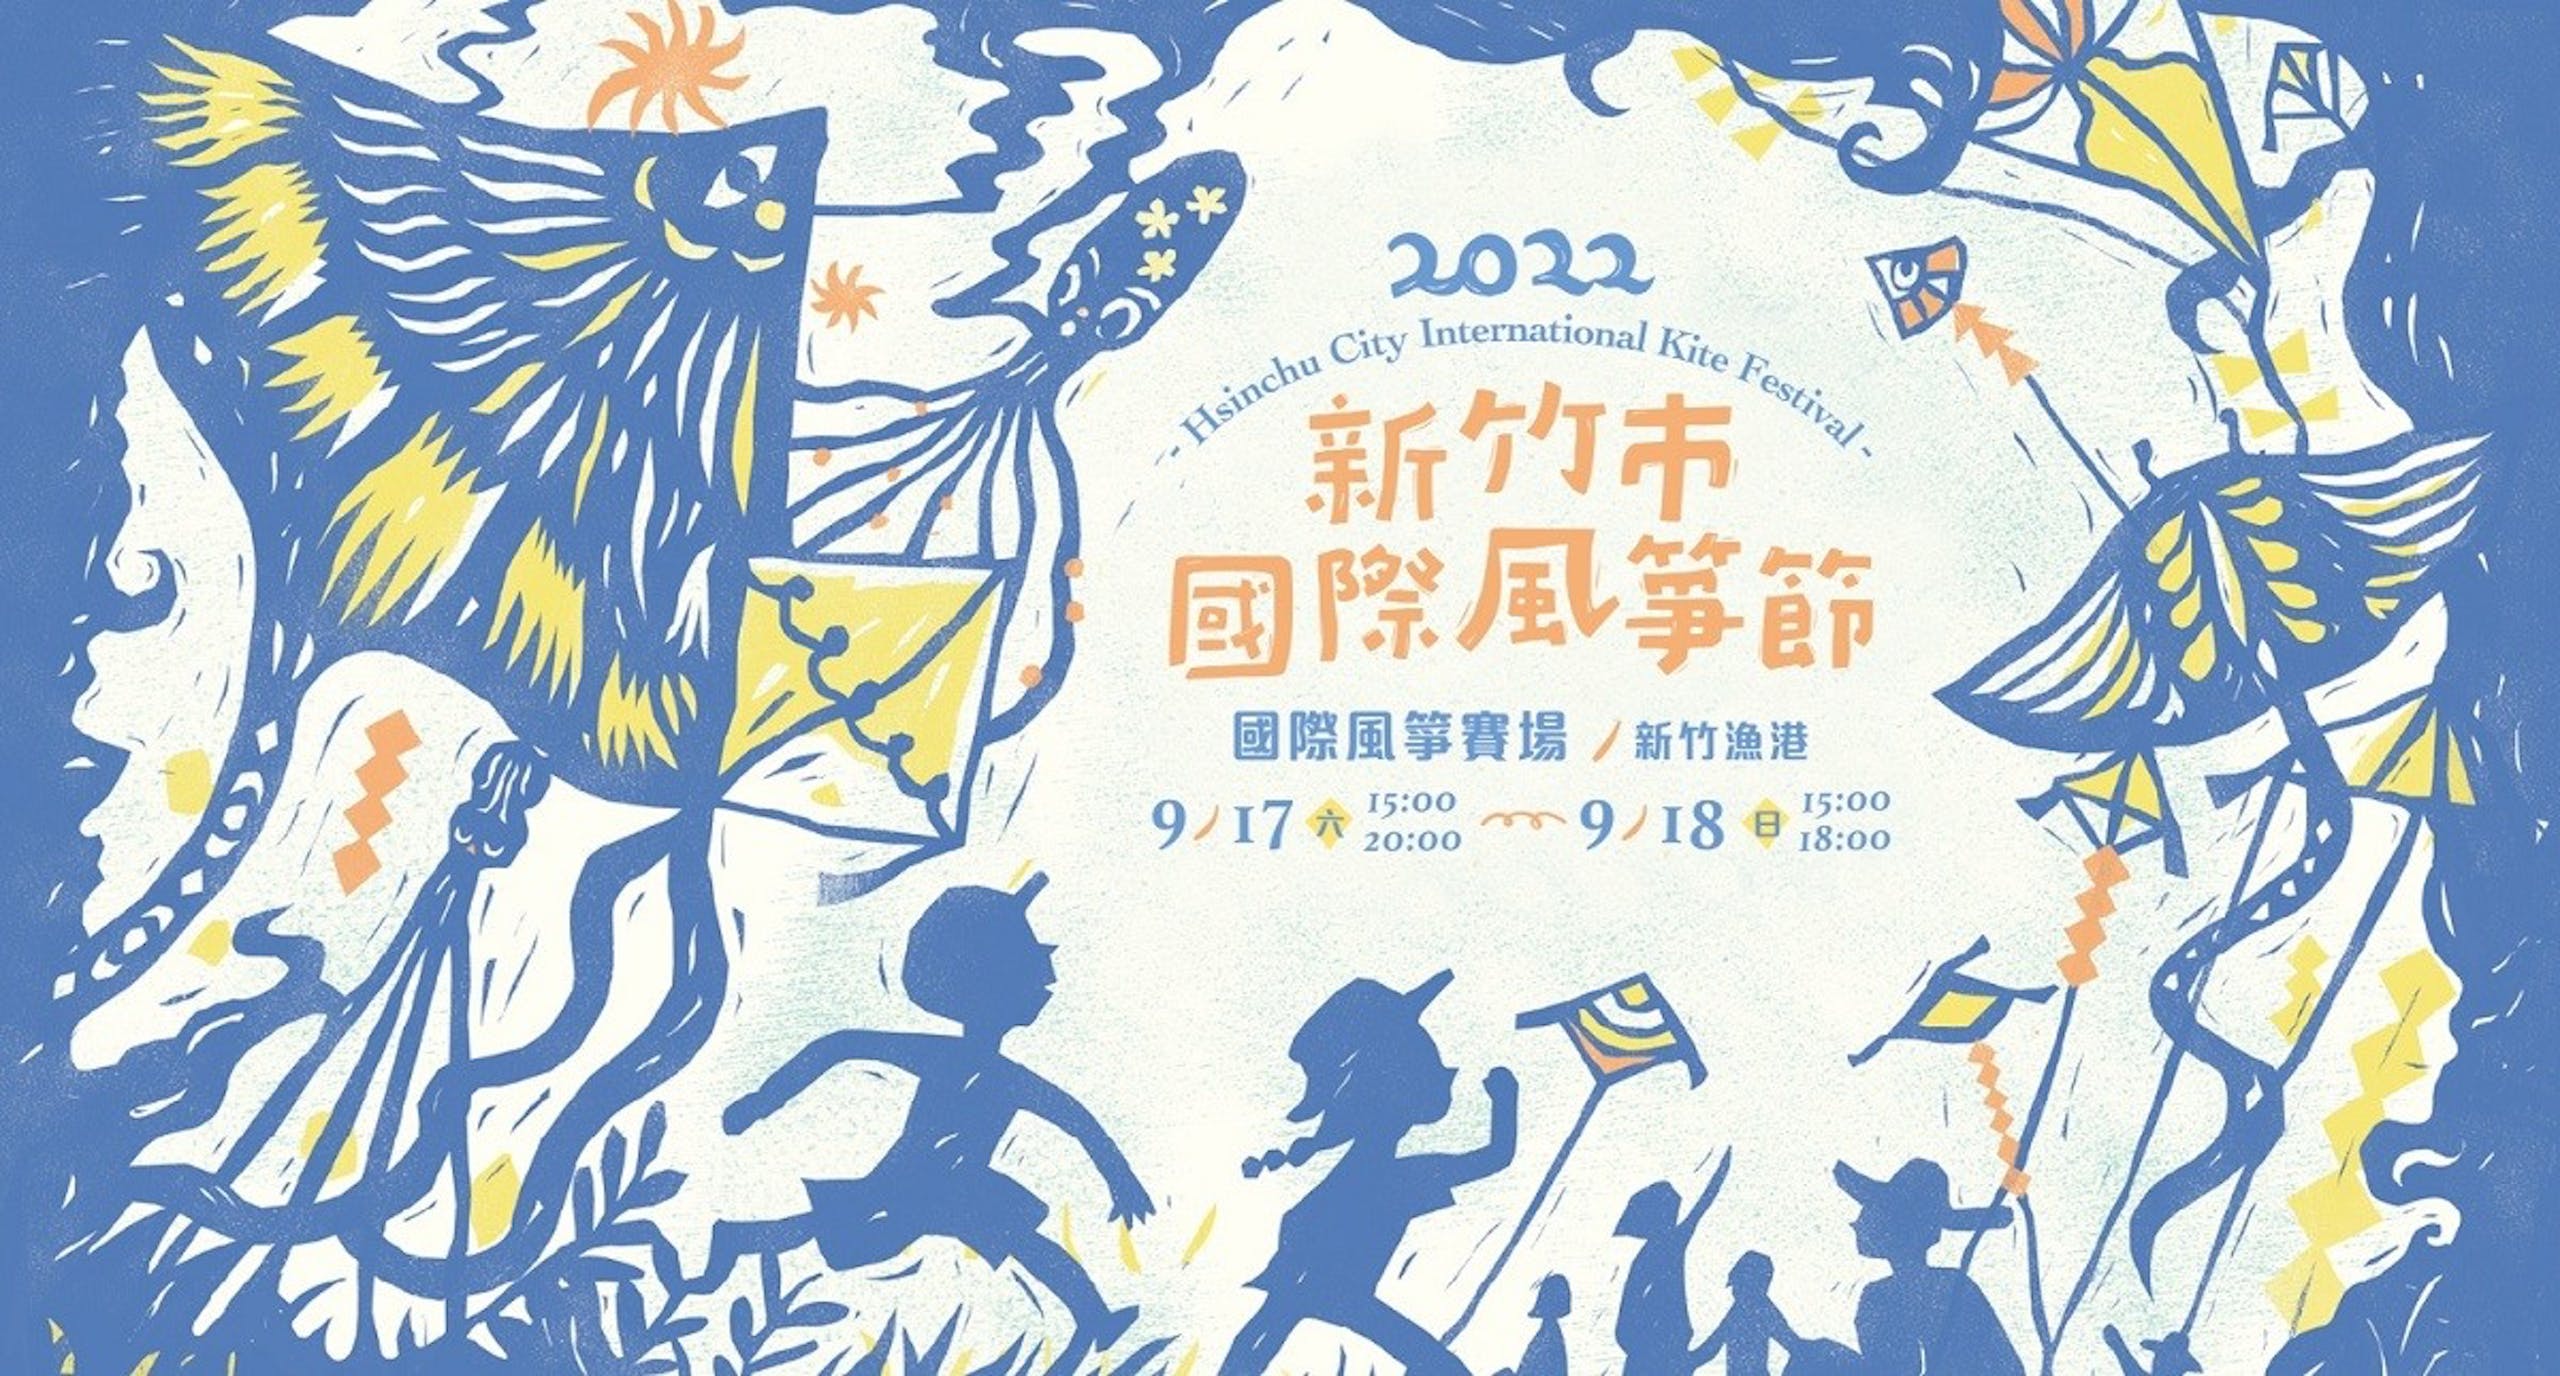 2022新竹風箏節懶人包：日期時間、表演節目、大眾運輸交通、接駁車、造型風箏種類